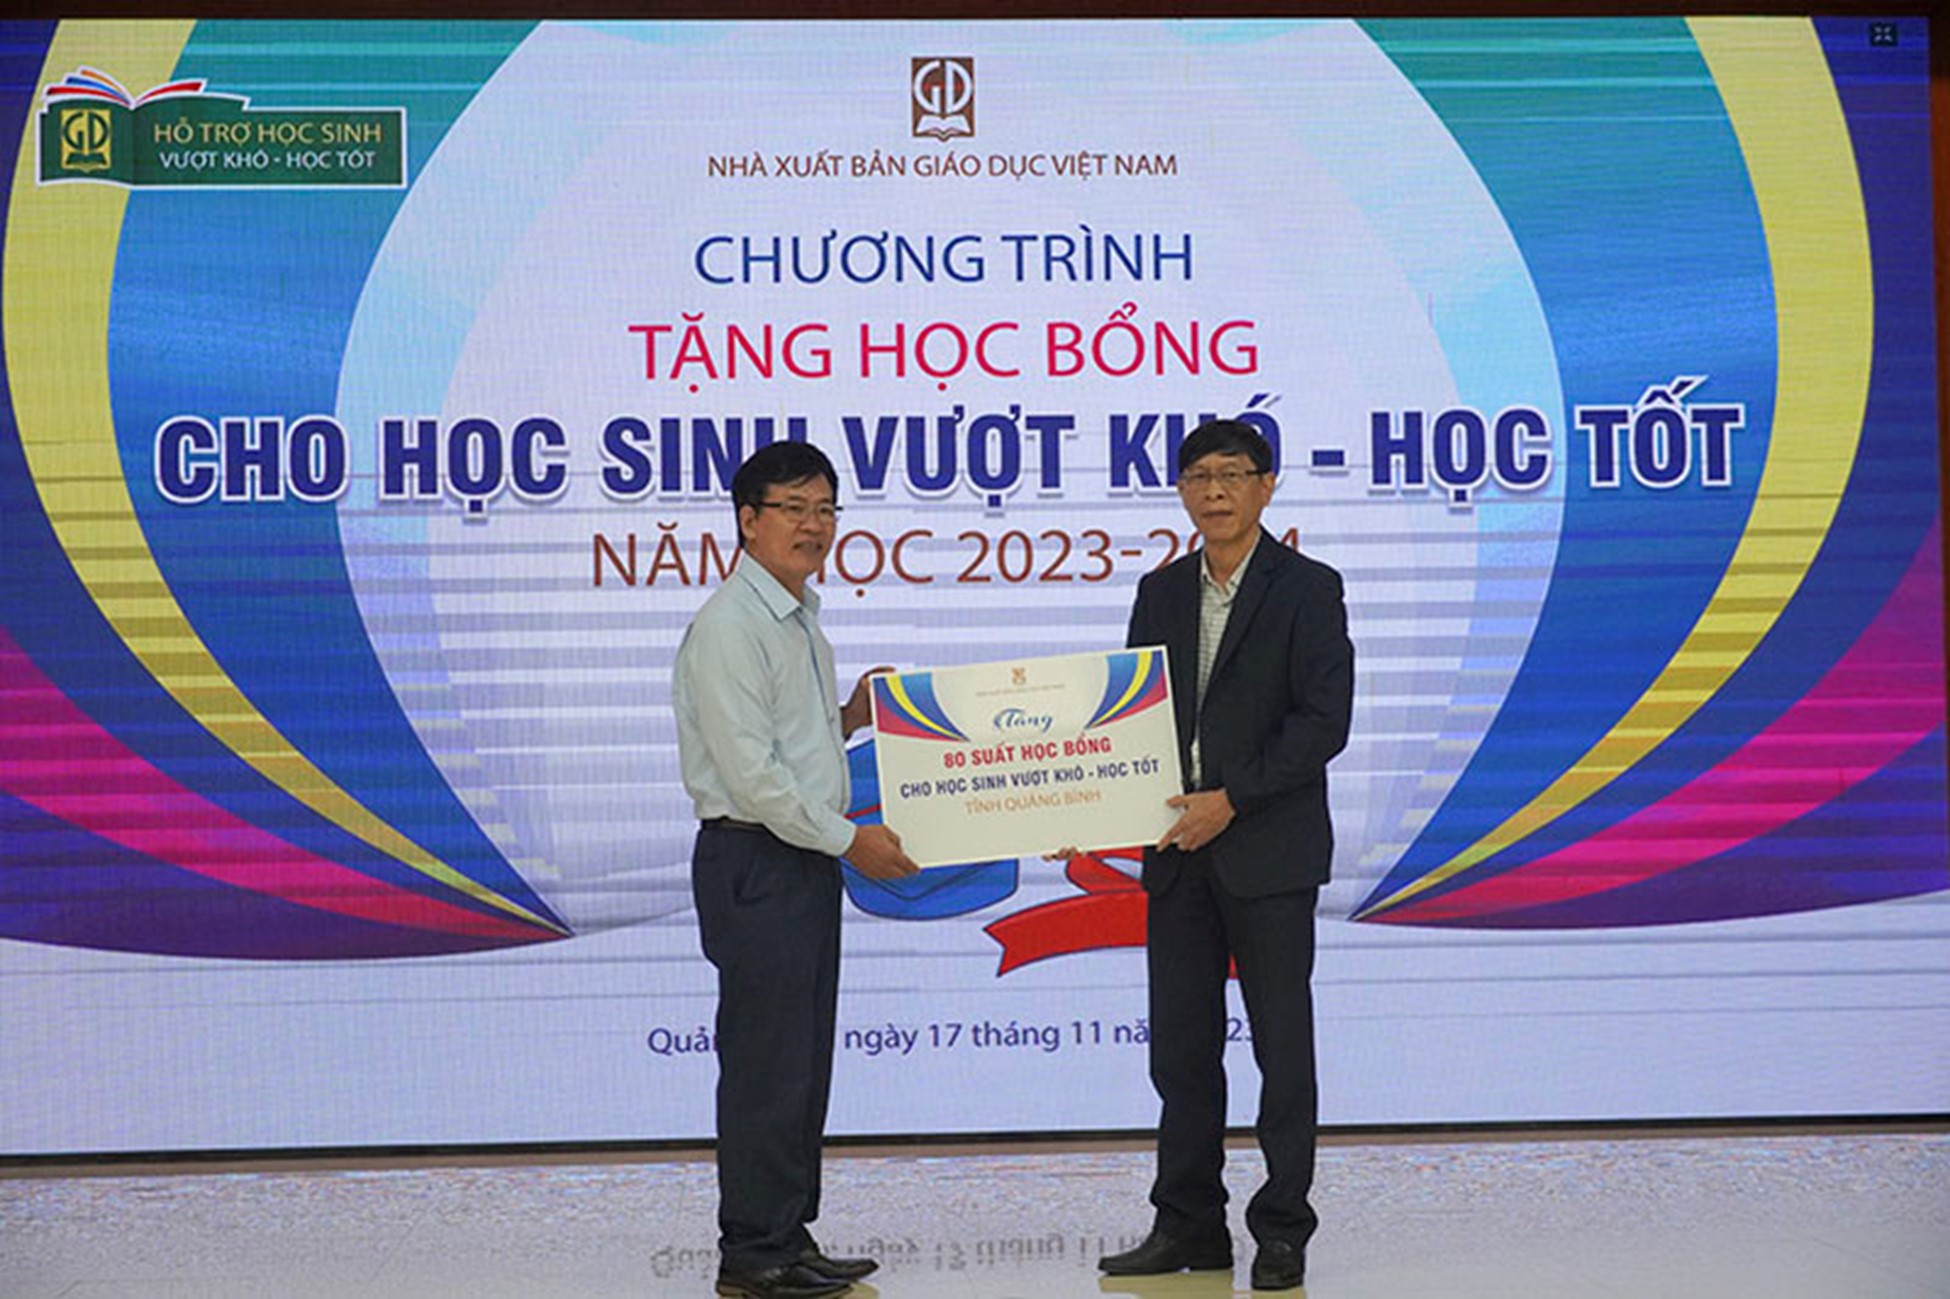 Chương trình trao tặng học bổng của Nhà xất bản Giáo dục Việt Nam tiếp tục đến với các em học sinh vượt khó học tốt trên cả nước